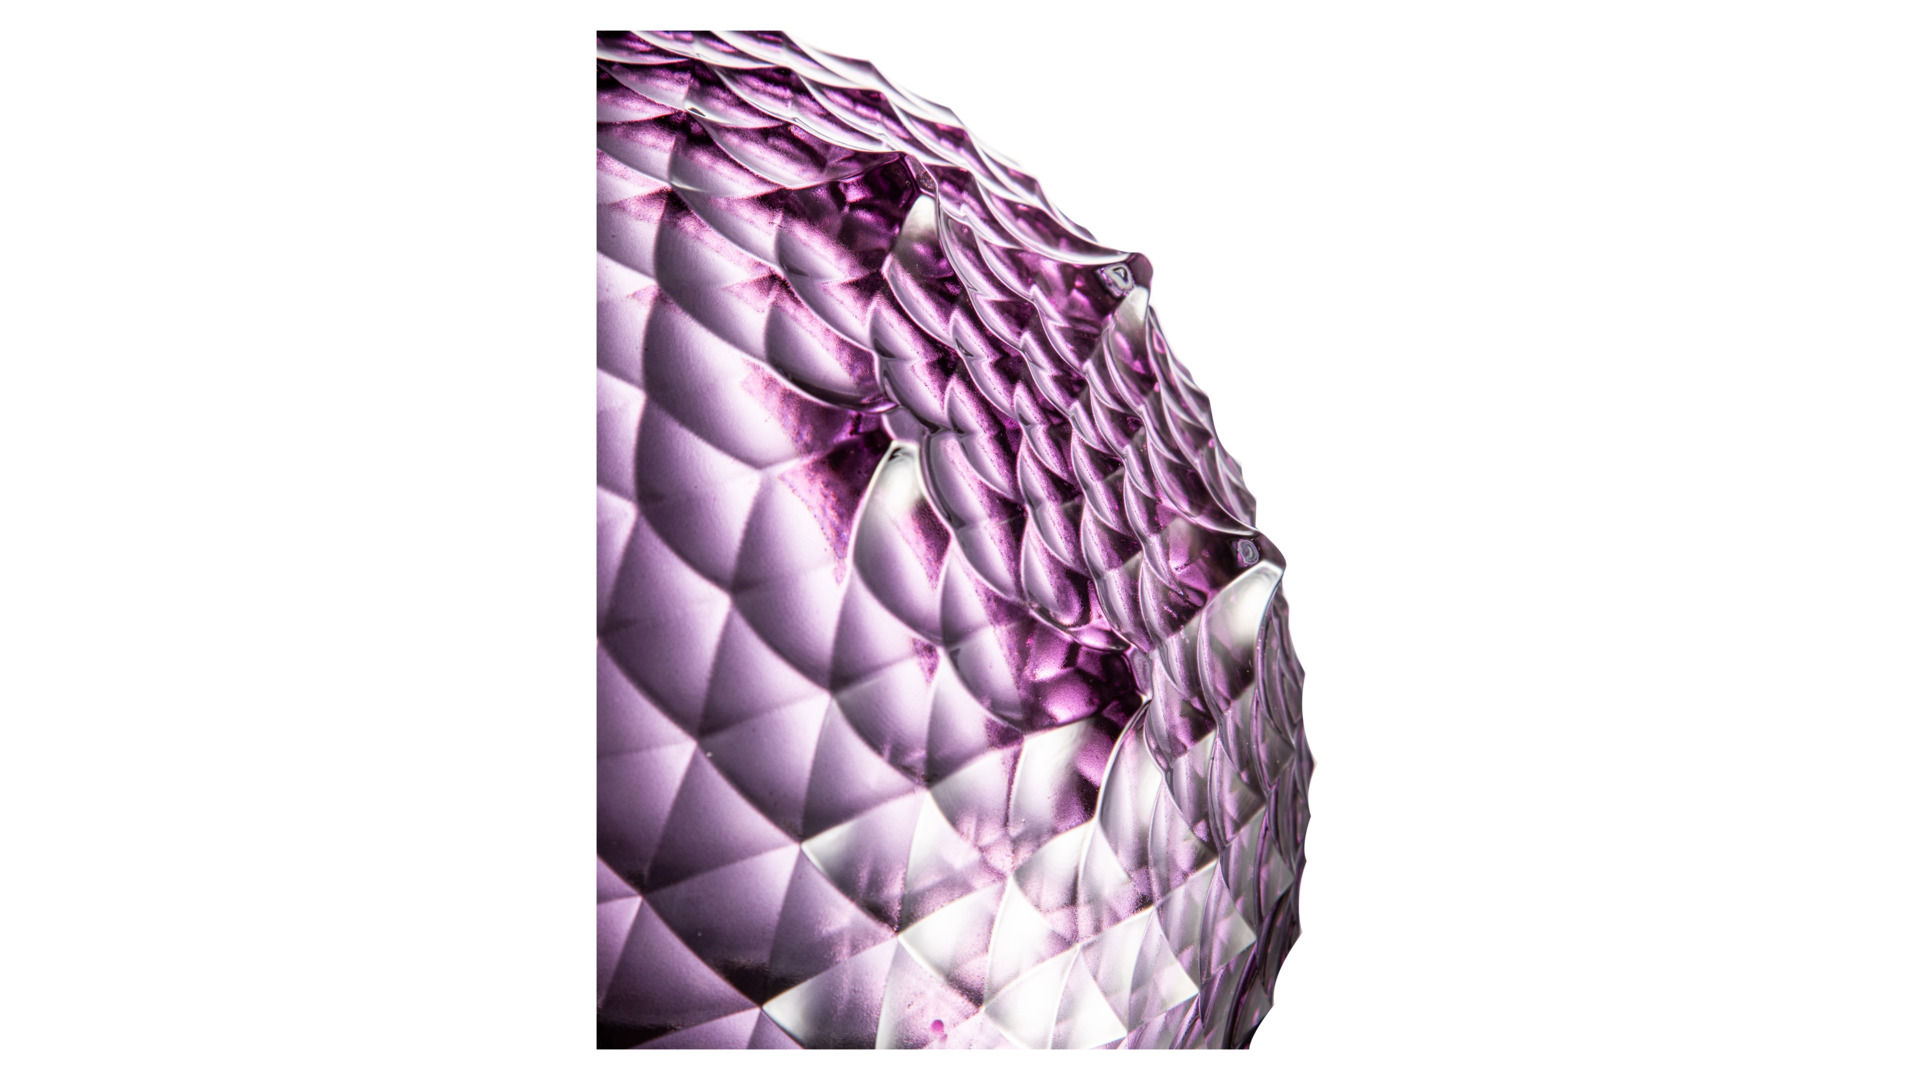 Конфетница с крышкой Cristal de Paris Каскад 28 см, h18 см, лиловая, ручка сатиновый цветок